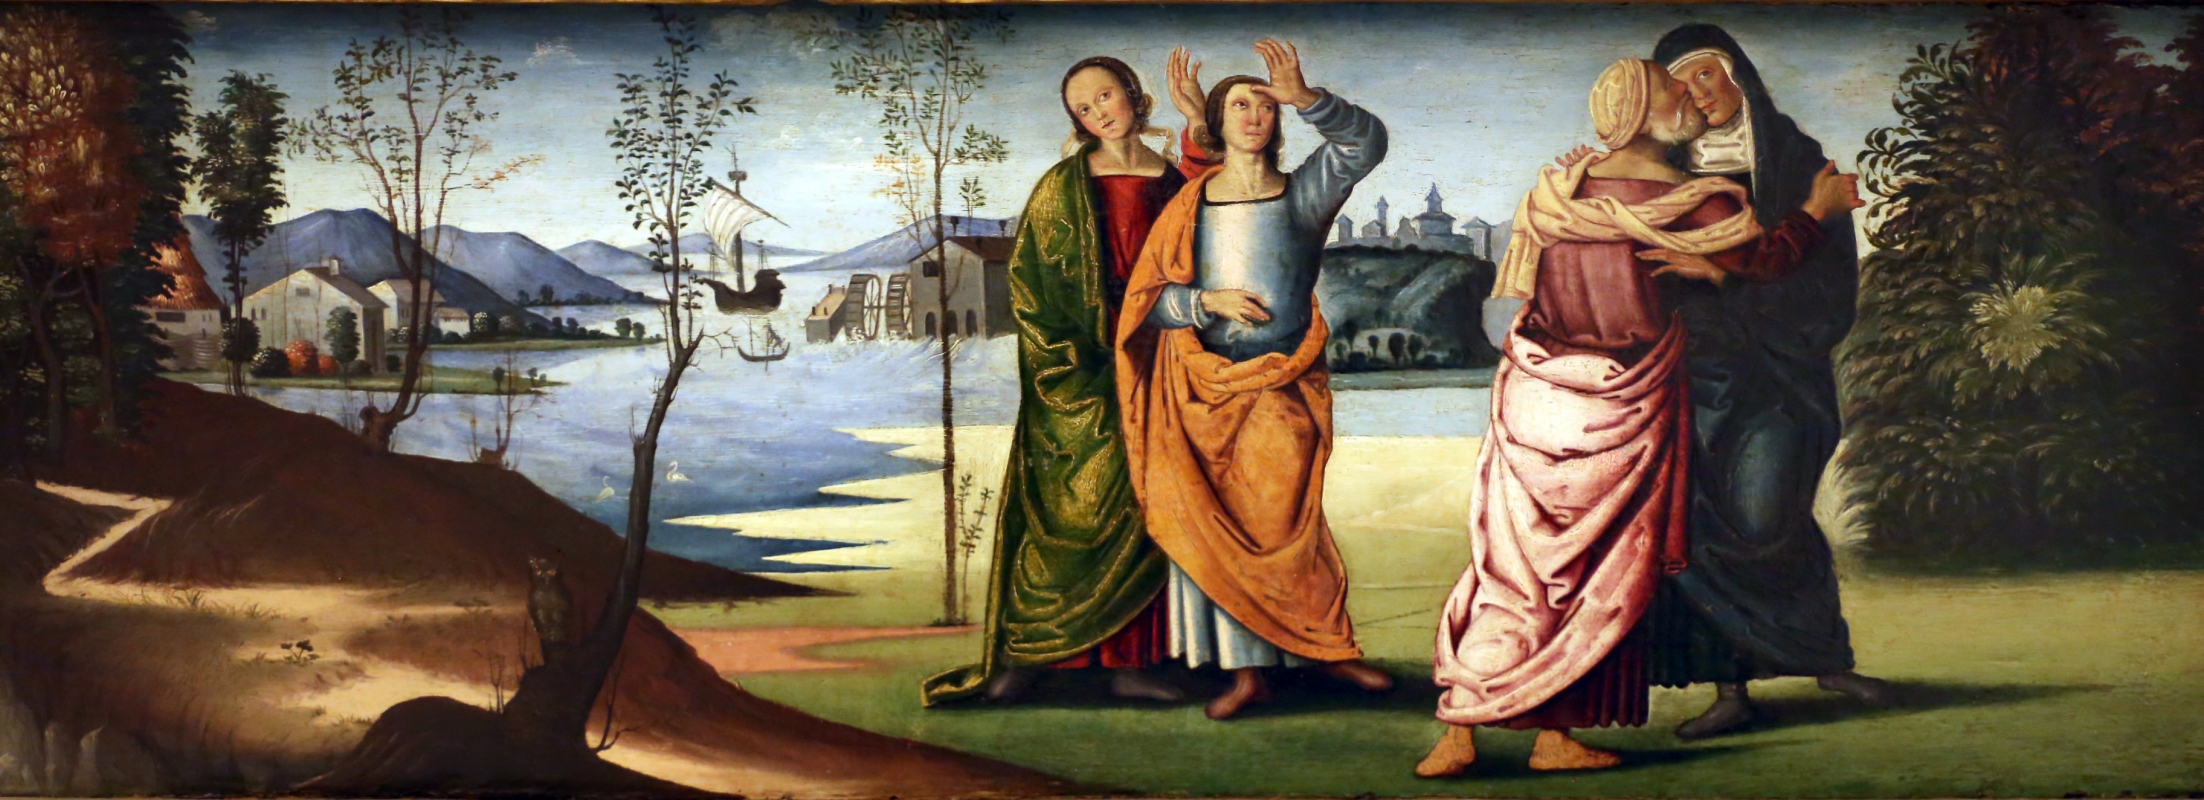 Marco meloni (attr.), storie di abramo, 1504, 04 - Sailko